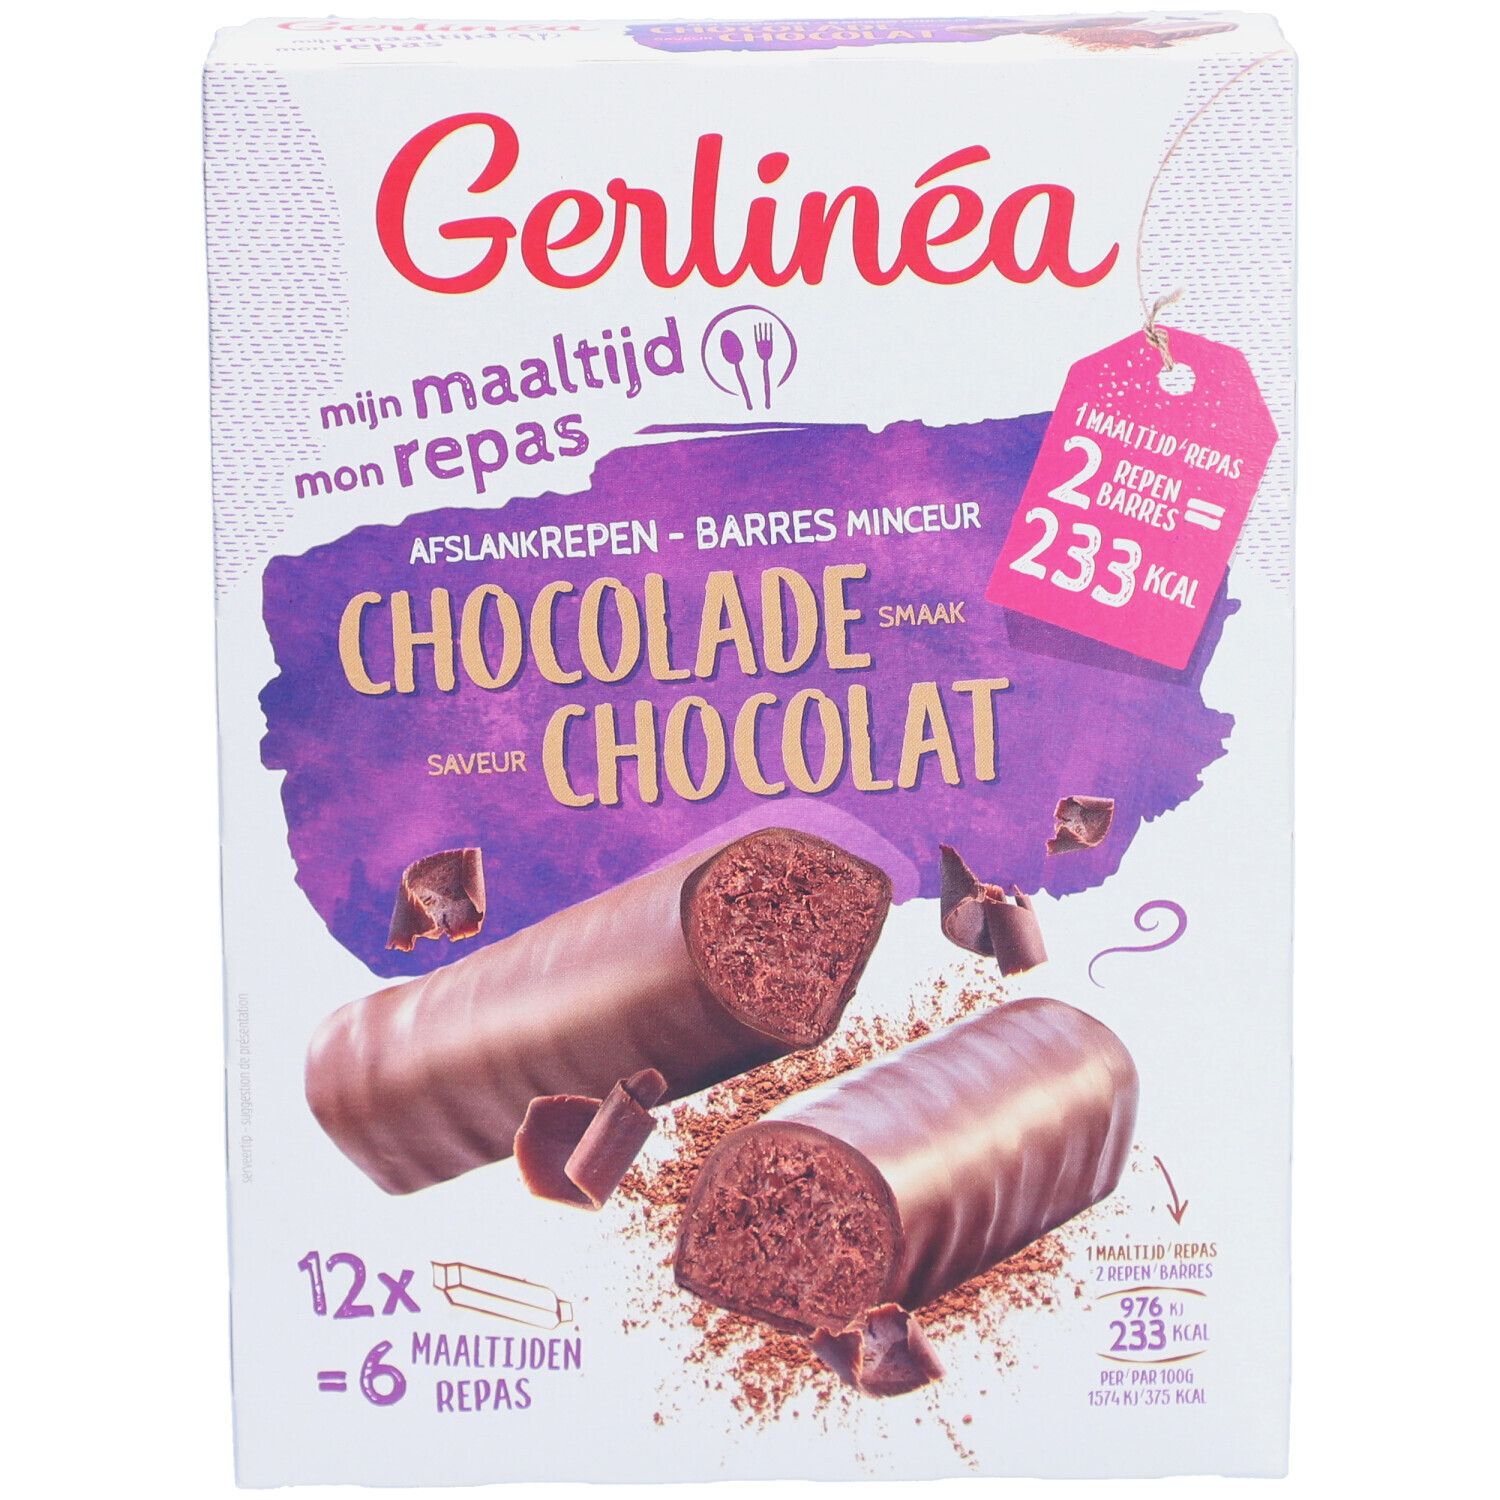 Gerlinéa Mon Repas Barres Chocolat